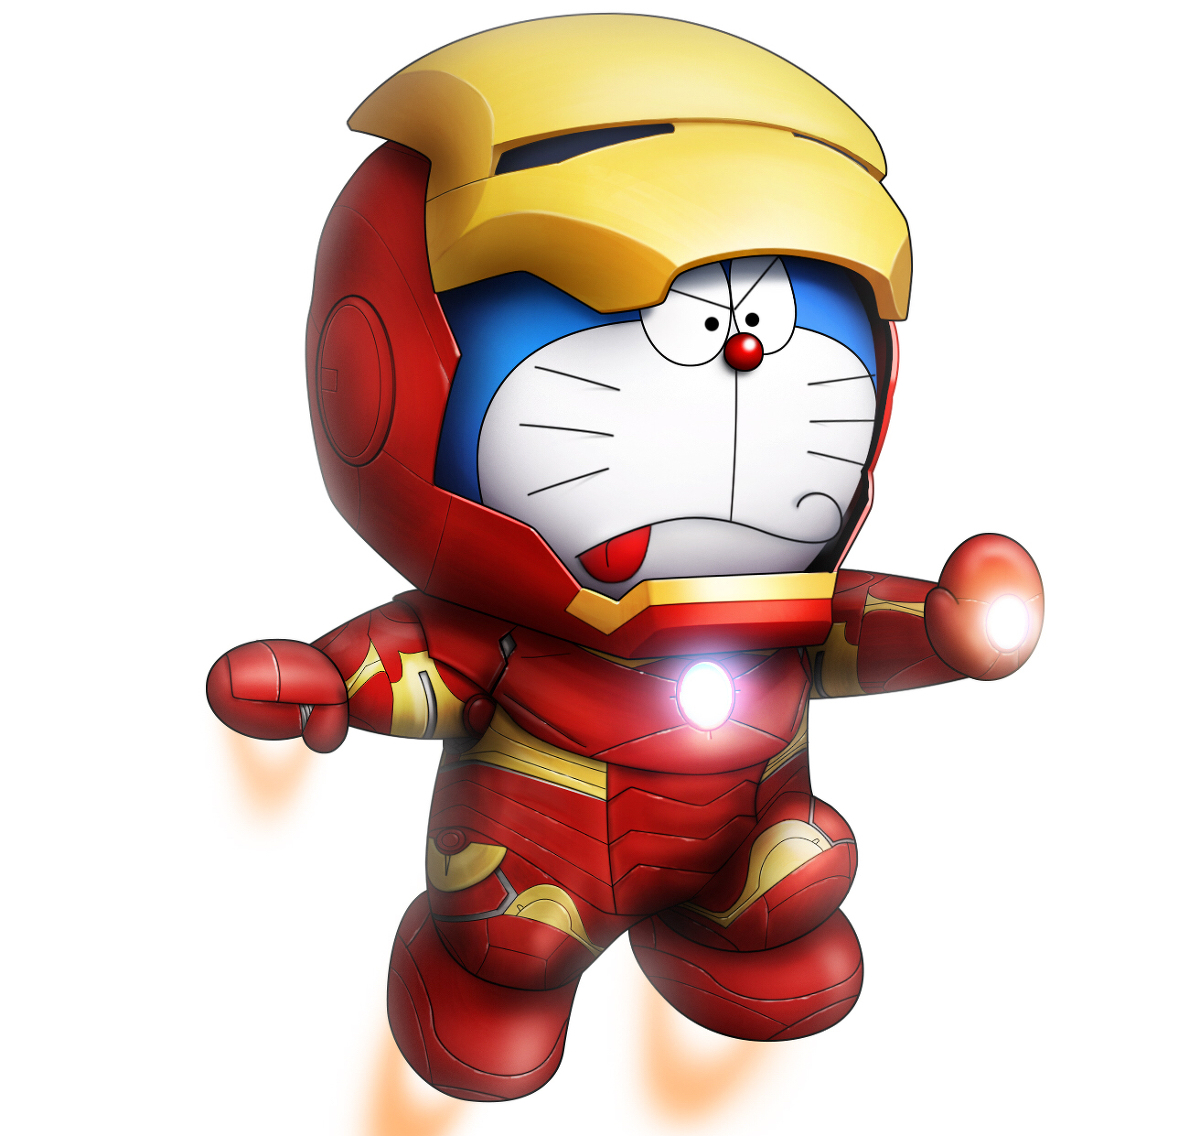 Bạn có biết rằng Doraemon là chú mèo máy đáng yêu nhất trong truyện tranh? Hãy xem hình ảnh về Doraemon và khám phá thế giới phong phú của anh ấy.